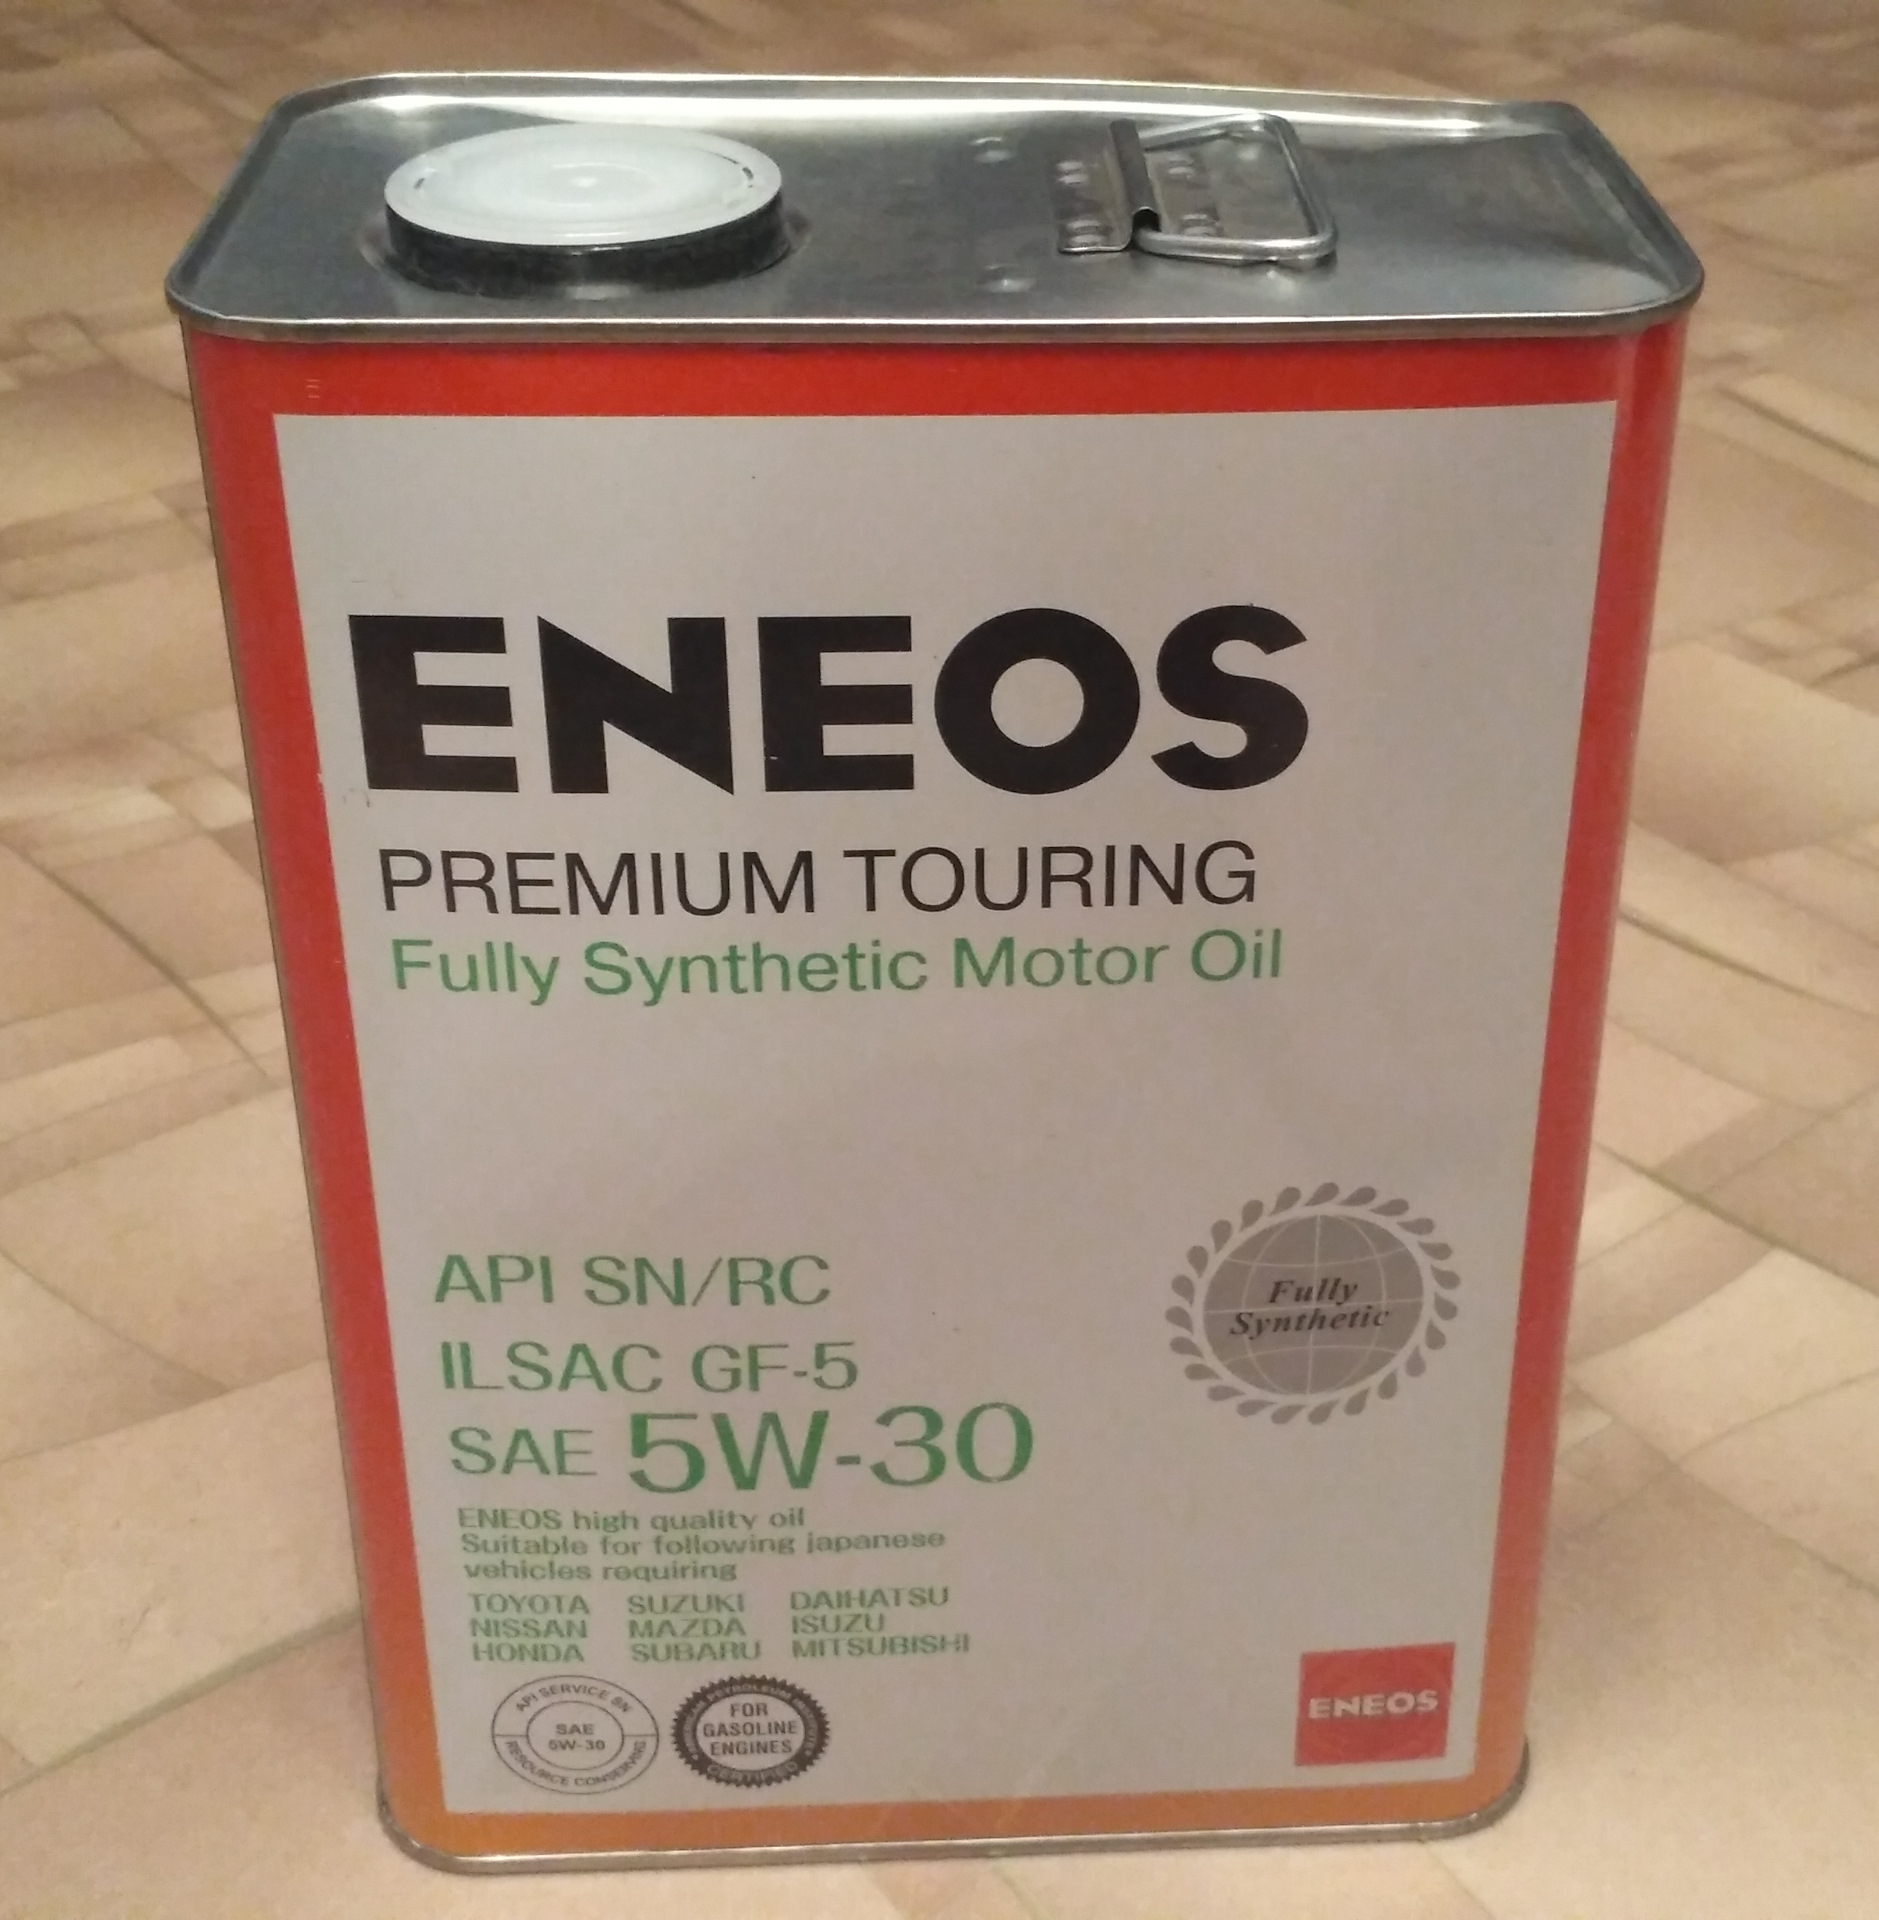 Eneos 5w30 touring. ENEOS Premium Touring 5w-30. ENEOS 5w30 Premium Touring fully. ENEOS Premium Touring fully Synthetic 5w-30. Масло ENEOS 5w30 премиум туринг.